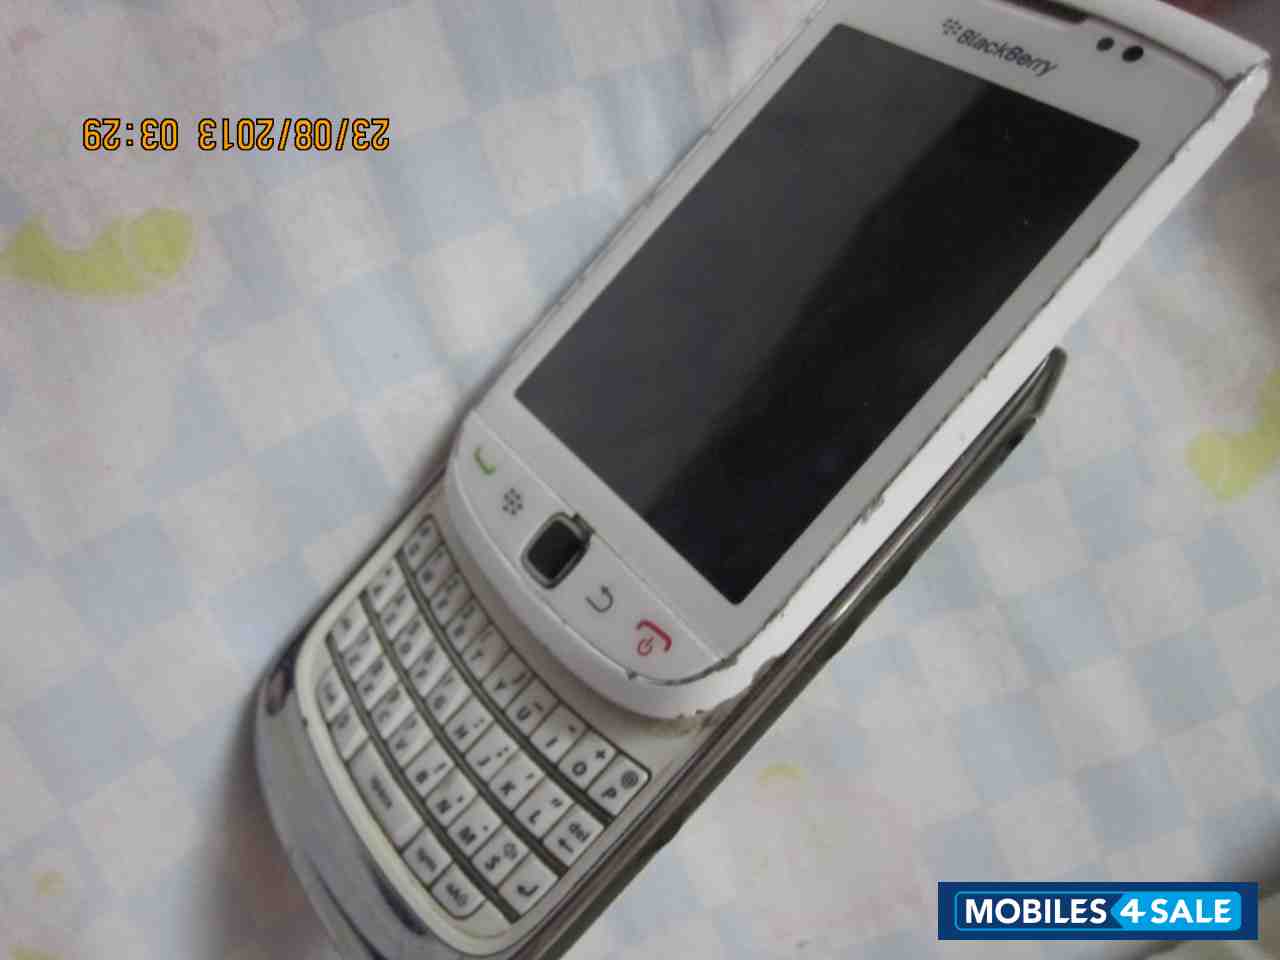 White BlackBerry Torch 9800